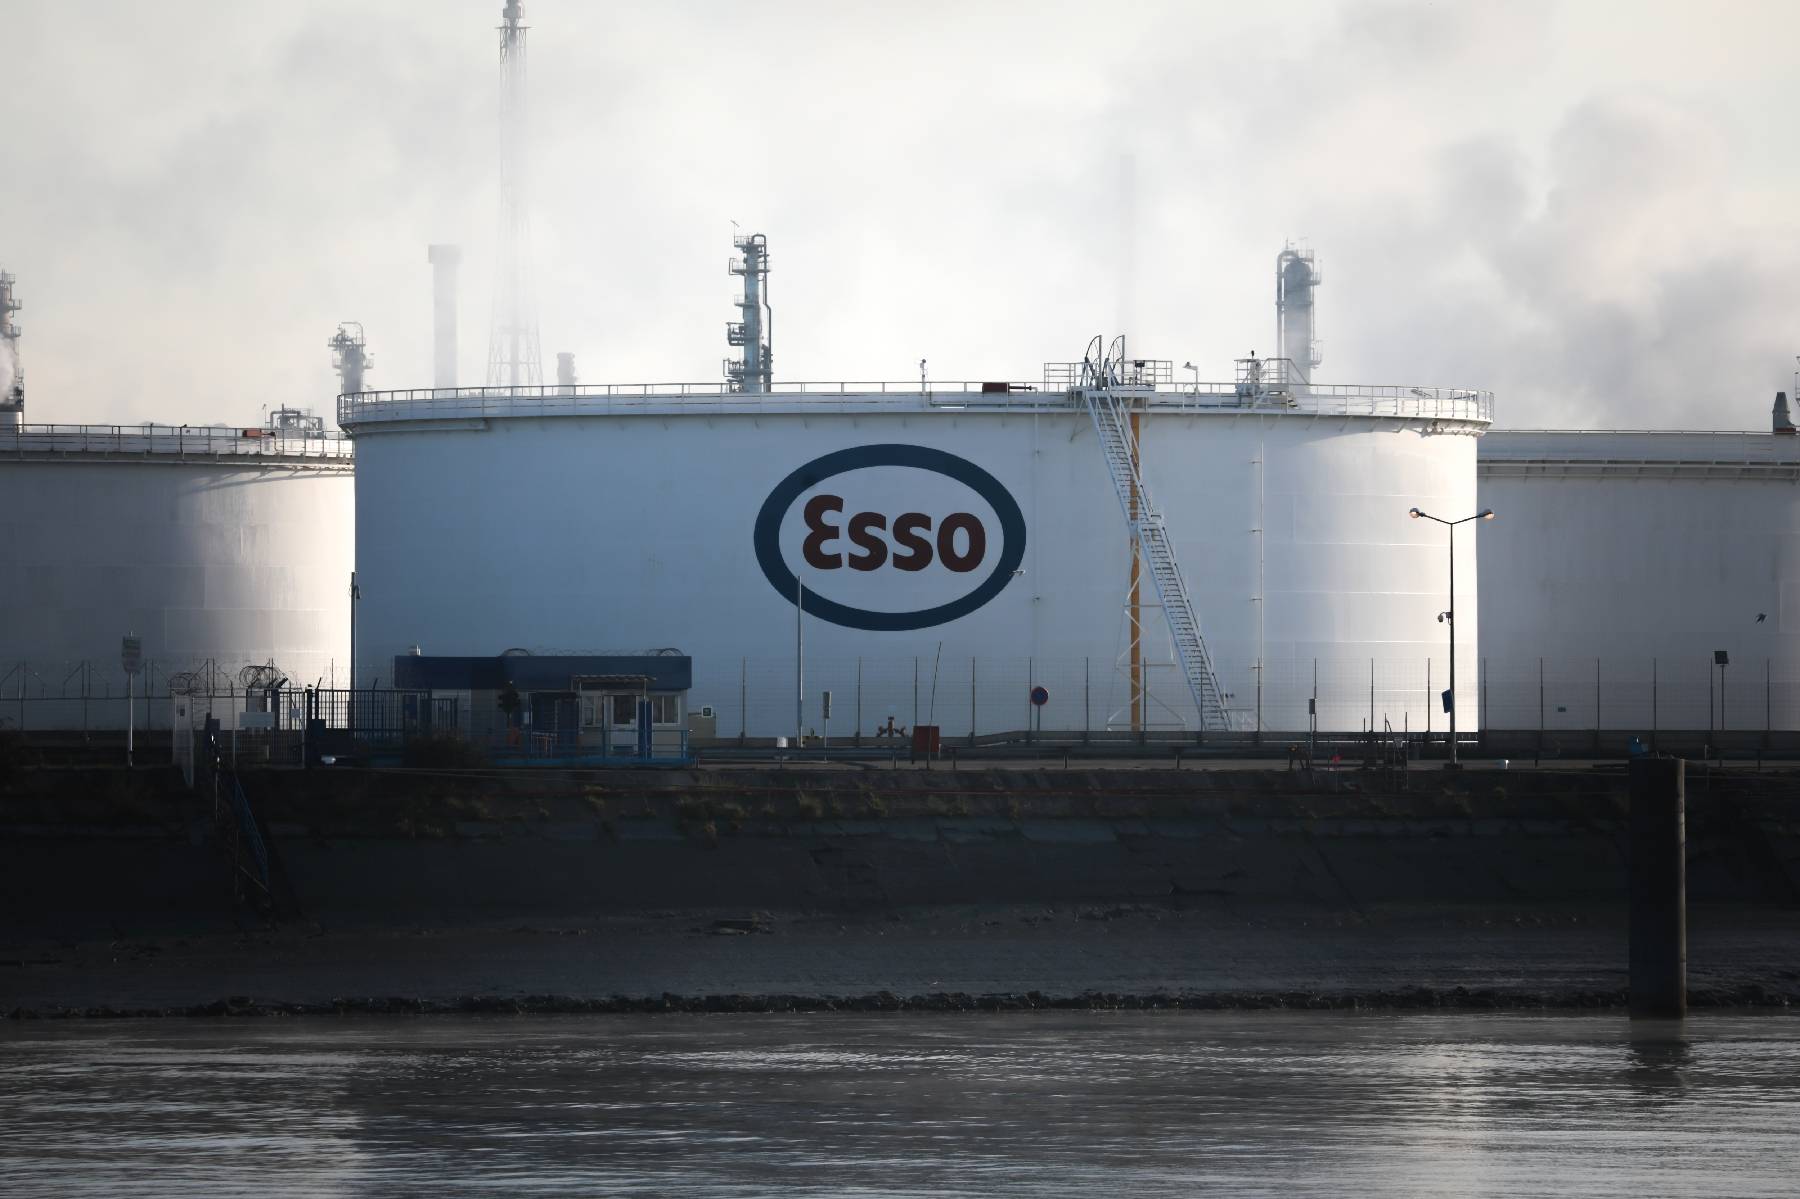 Reforme des retraites - Esso-ExxonMobil : reprise des expéditions de carburant à la raffinerie de Port-Jérôme-Gravenchon